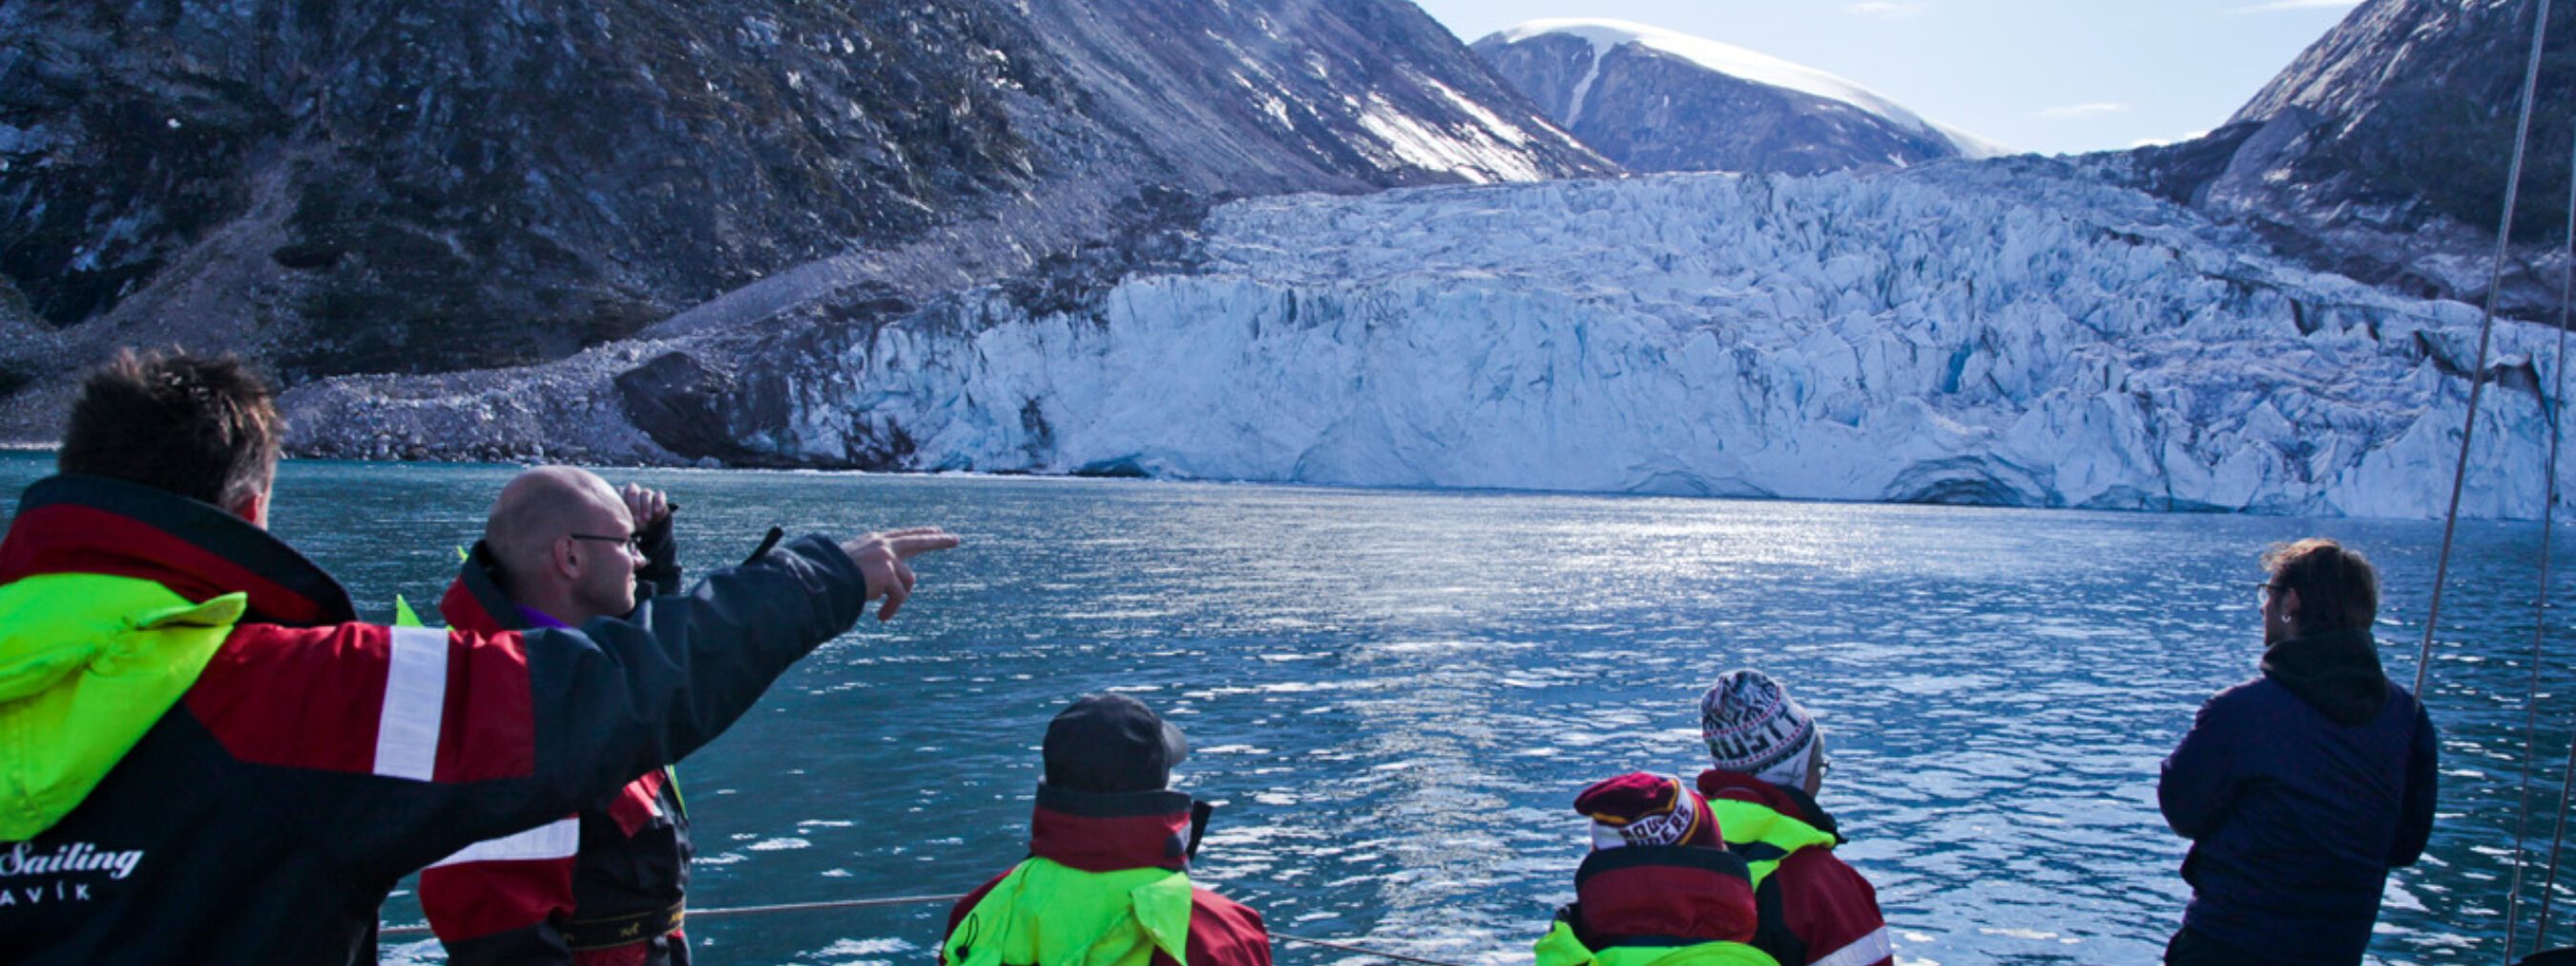 Segeltour Ostgrönland;
Besucher bestaunen vom Boot aus den ins Meer fließenden Gletscher